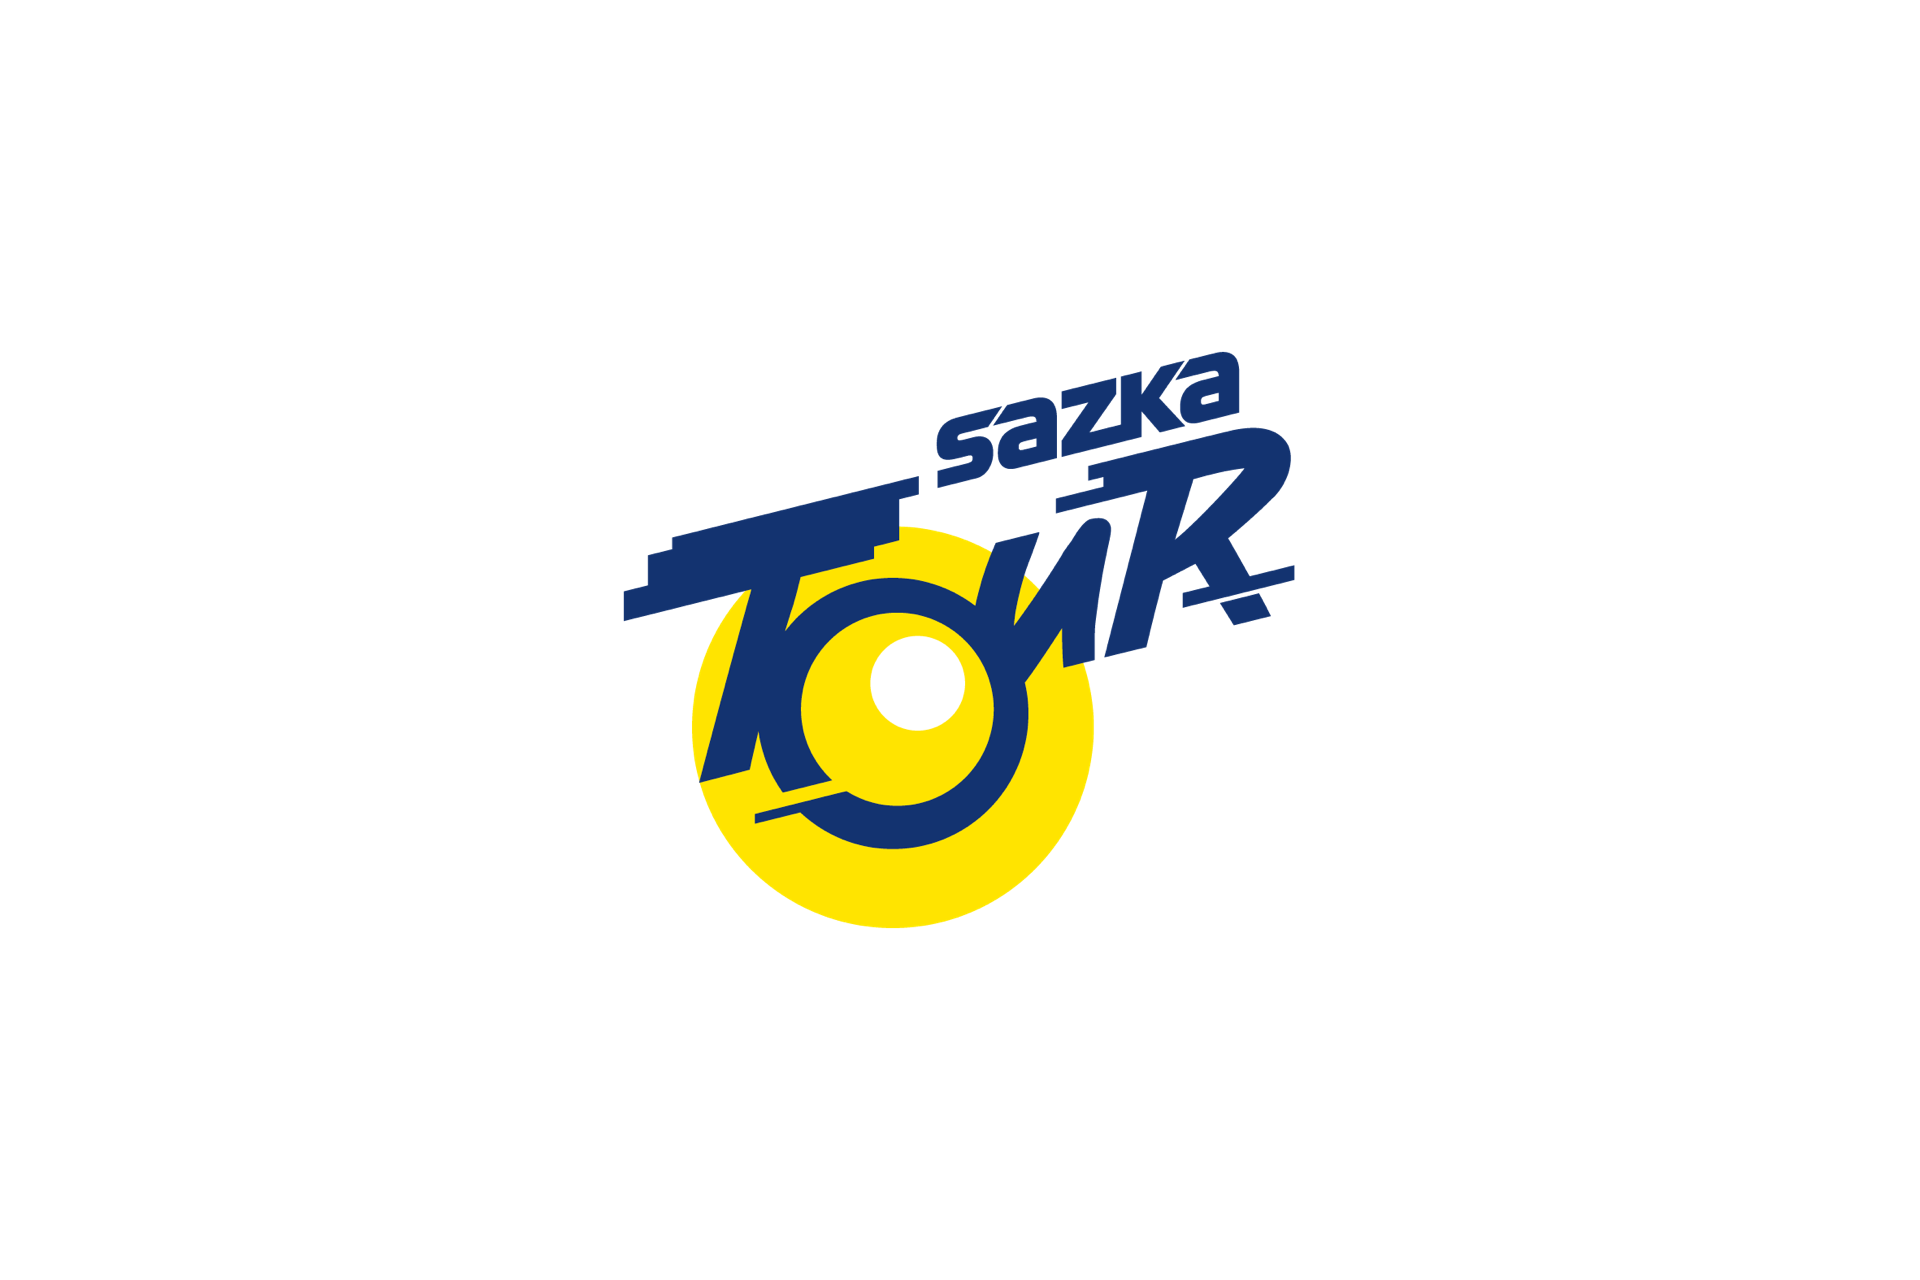 Sazka Tour 2021: etap 2. Nick Schultz na Pustevny